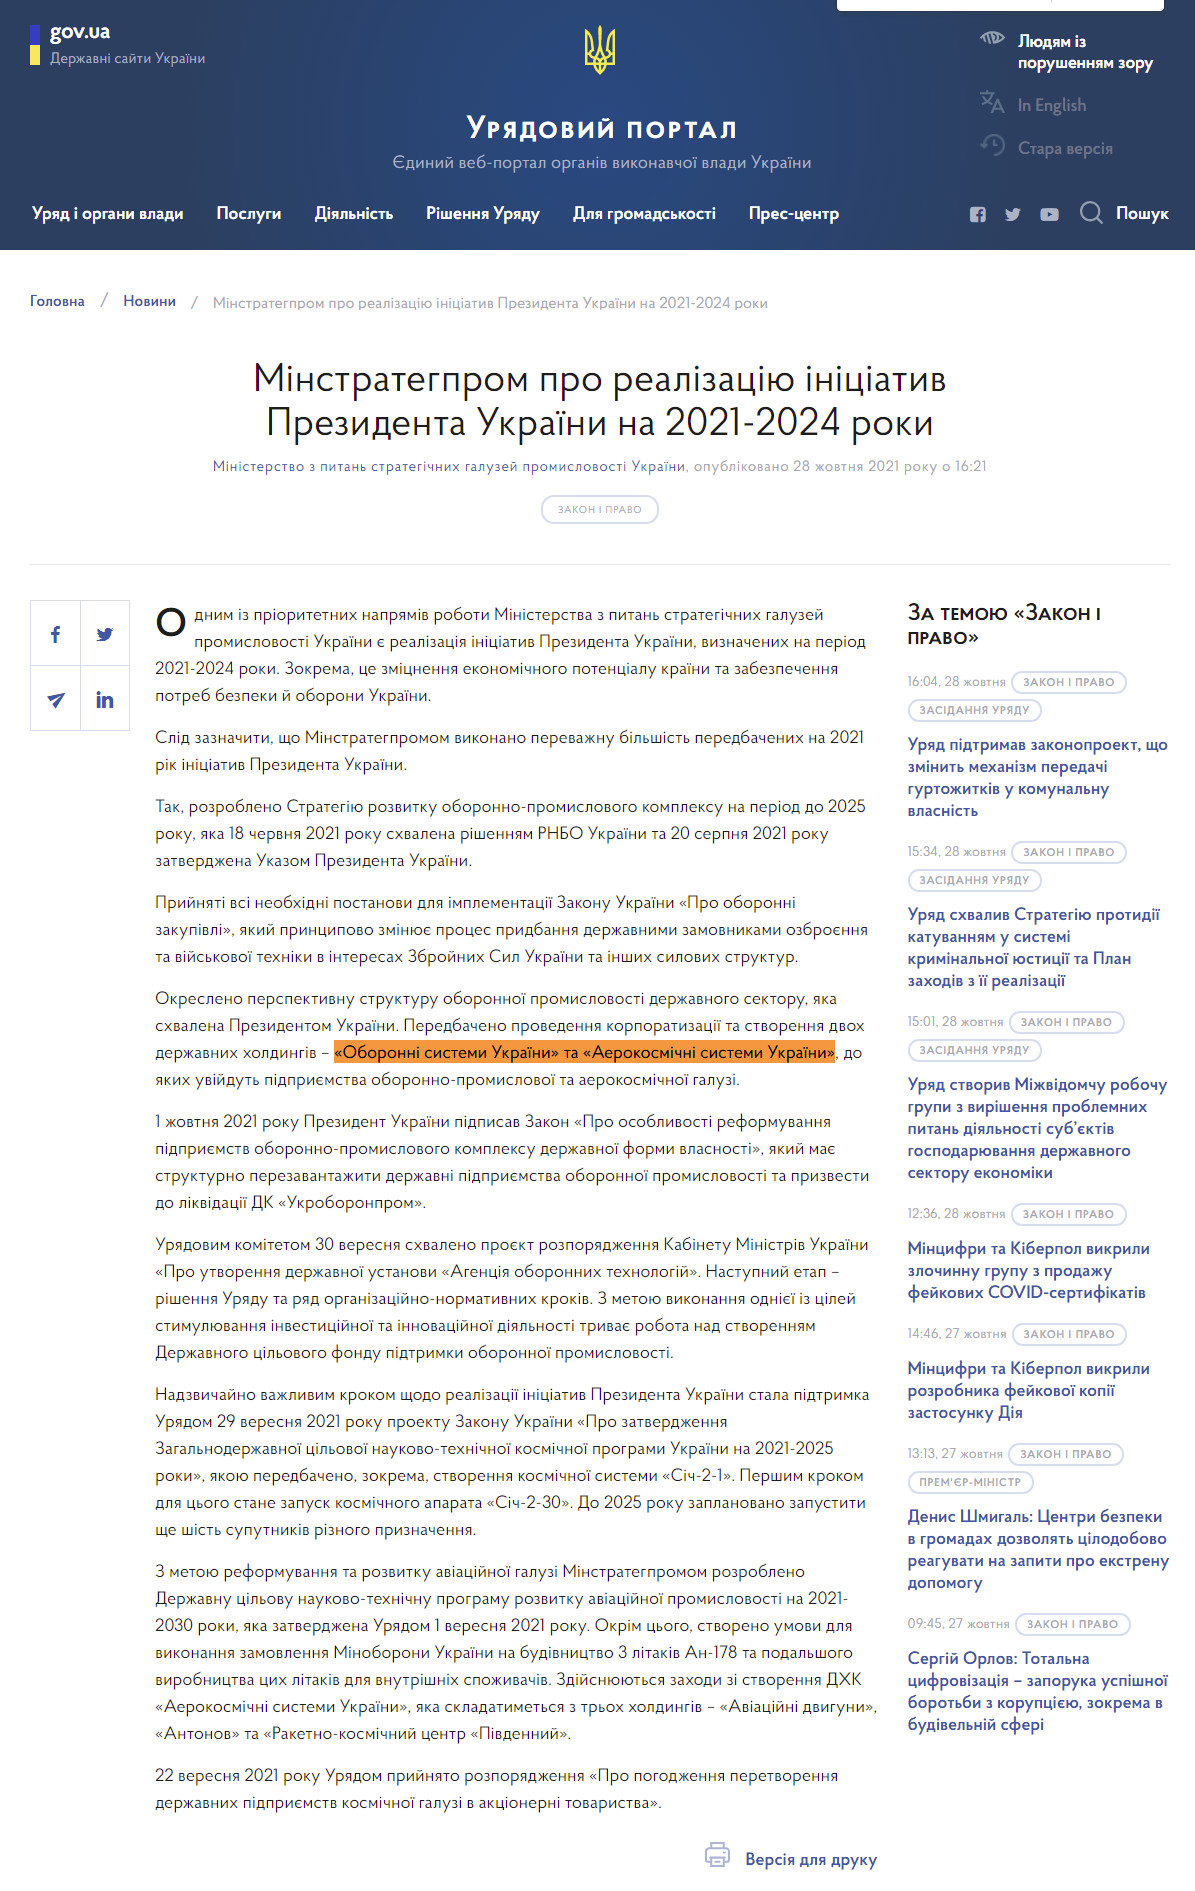 https://www.kmu.gov.ua/news/minstrategprom-pro-realizaciyu-iniciativ-prezidenta-ukrayini-na-2021-2024-roki